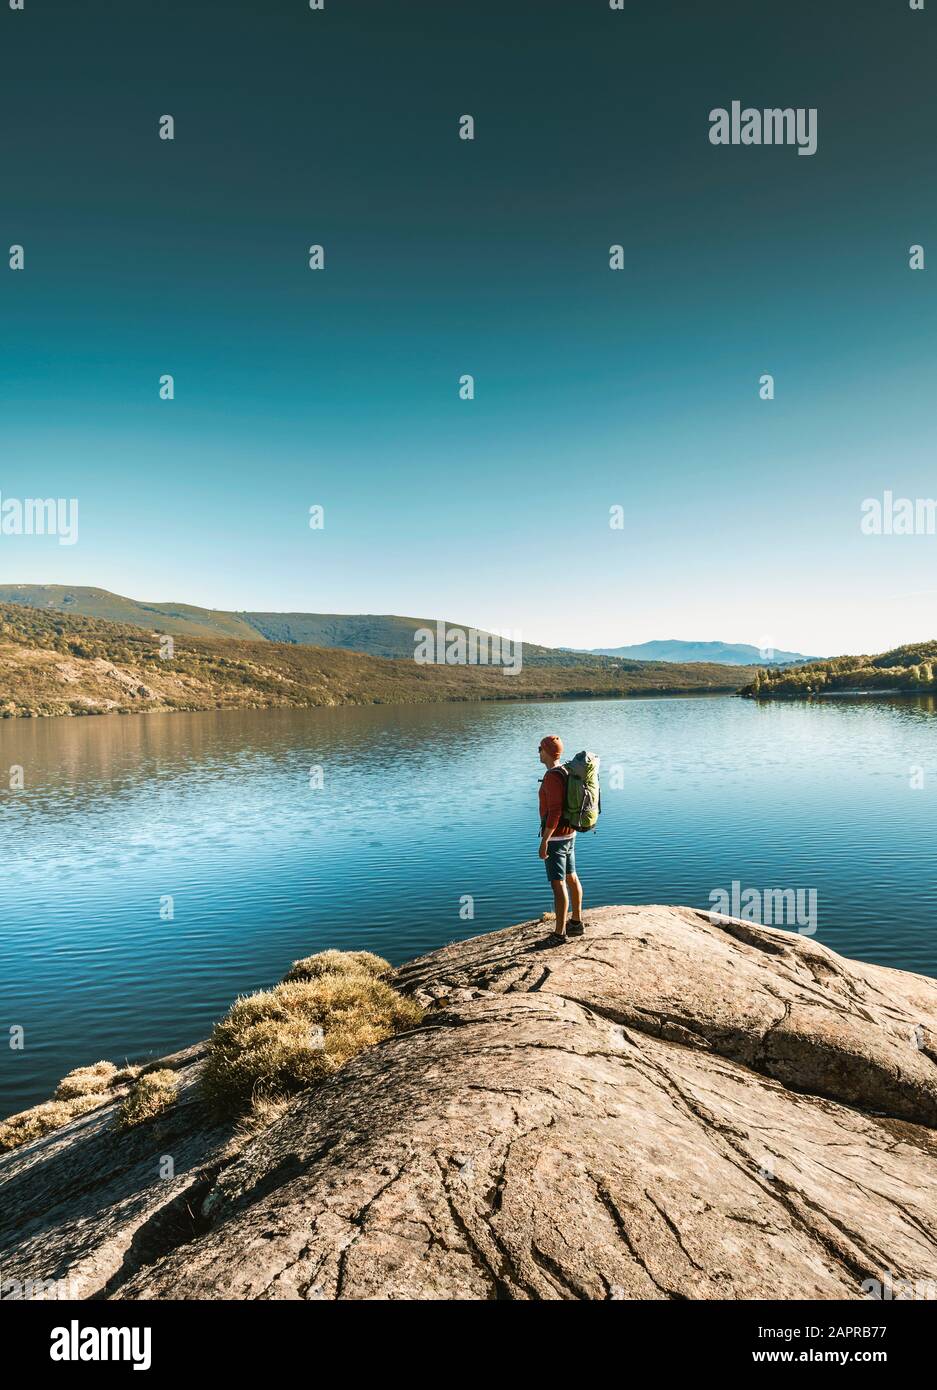 Shot of a man hiking near a beautiful lake Stock Photo